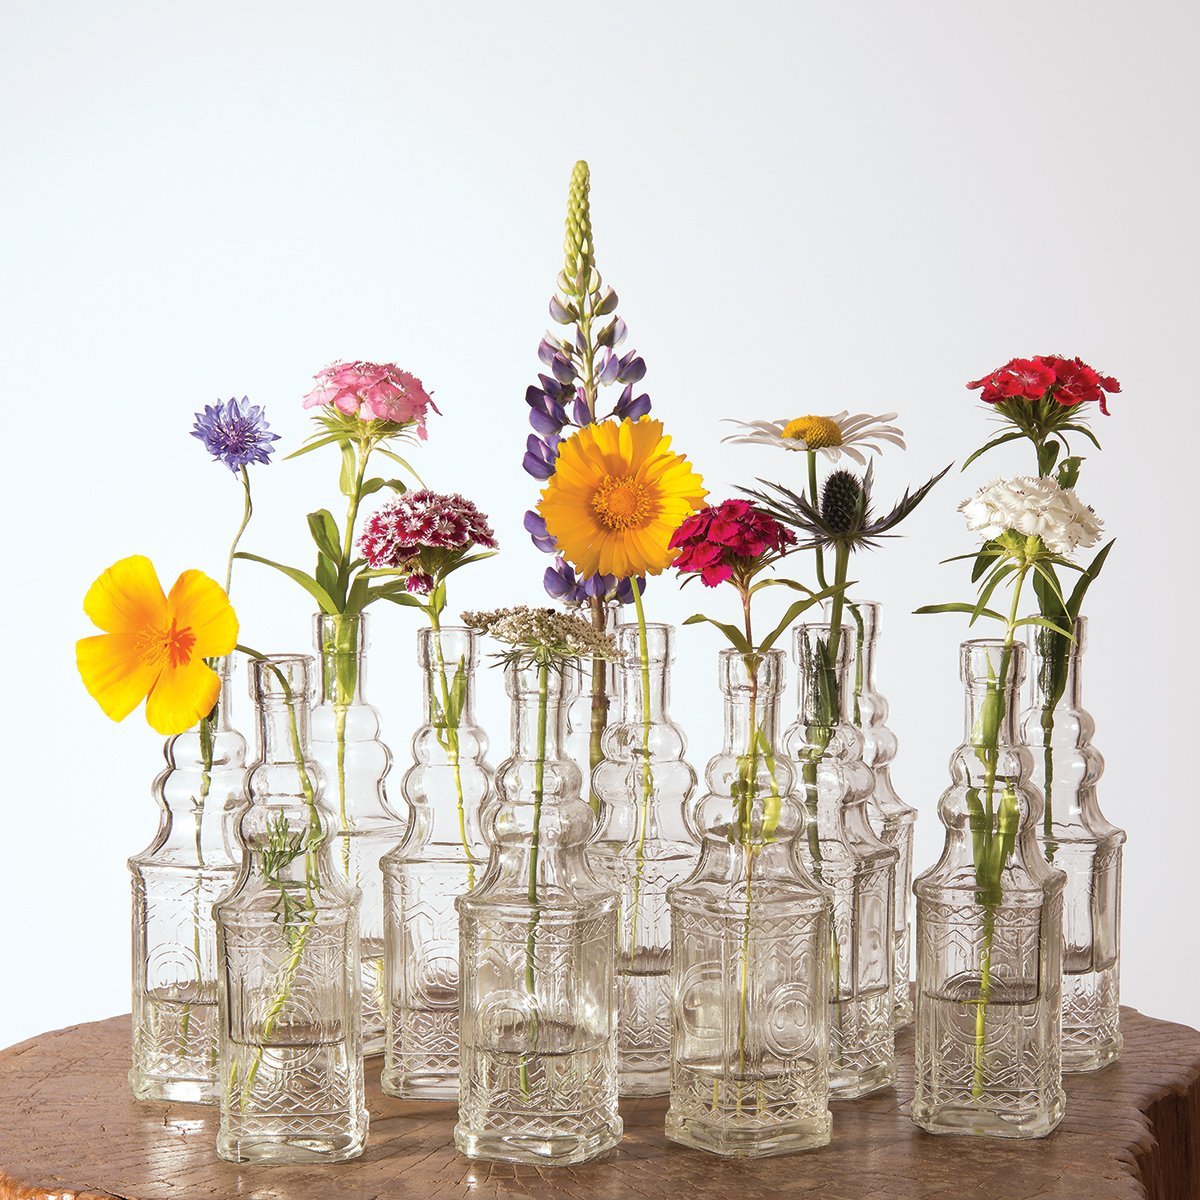 12 Pack | 6.5" Ella Clear Vintage Glass Bottle with Cork - DIY Wedding Flower Bud Vases - PaperLanternStore.com - Paper Lanterns, Decor, Party Lights & More